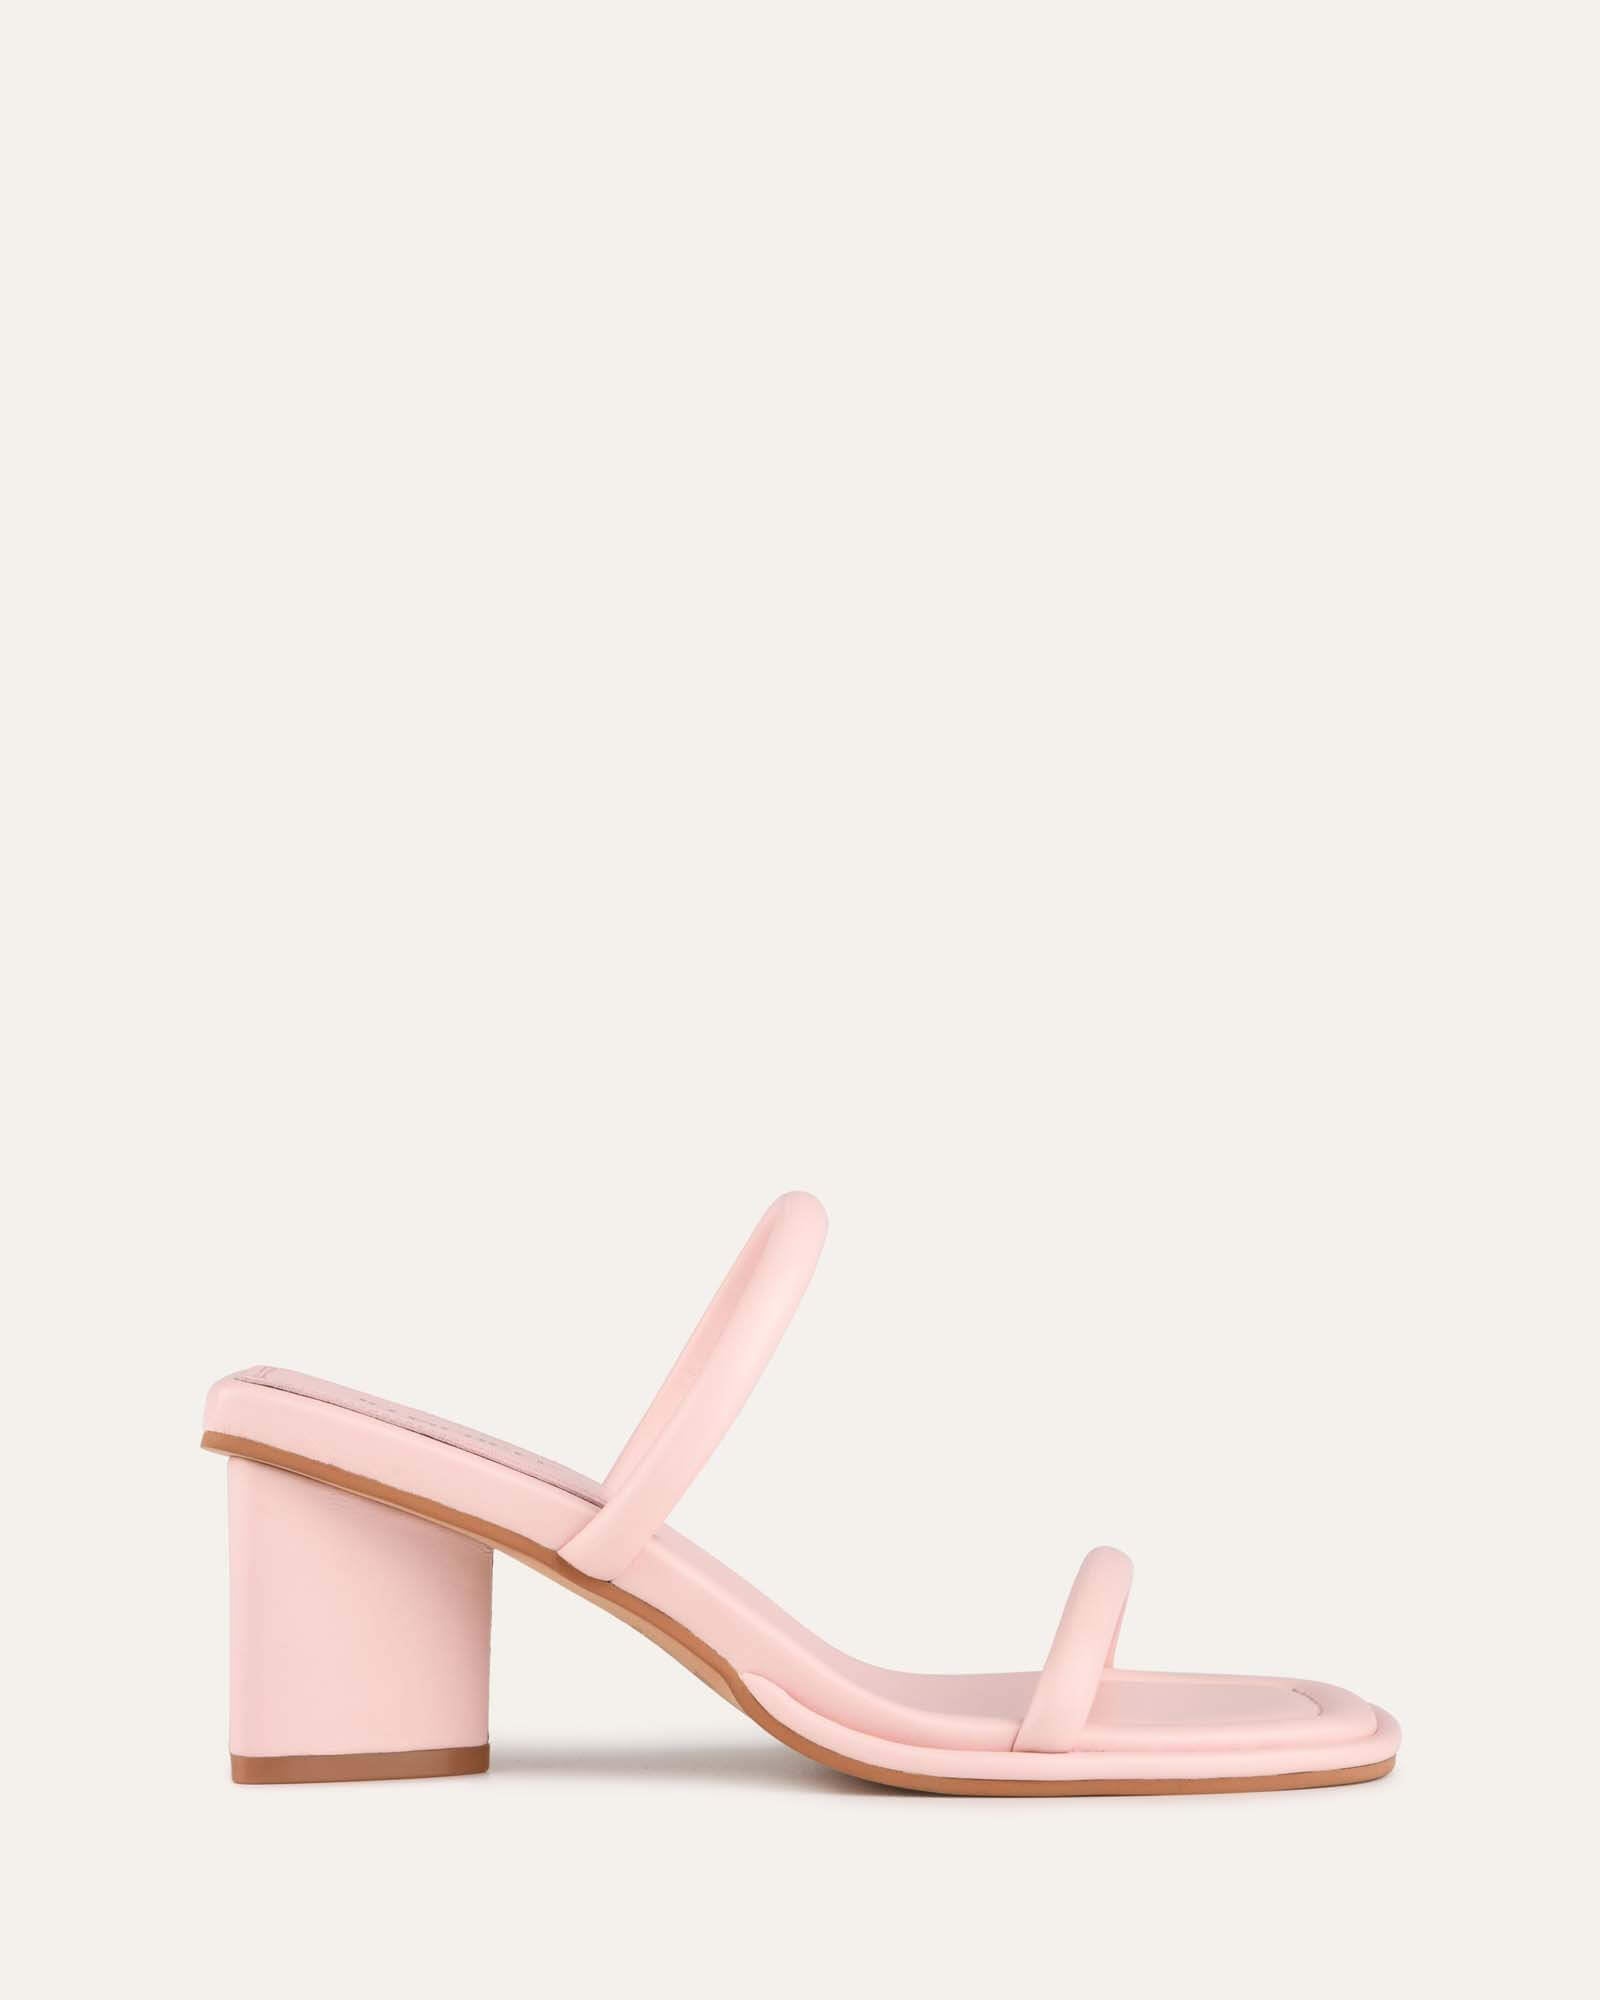 Lulu Women's Light Pink Block Heel Sandals | Aldo Shoes